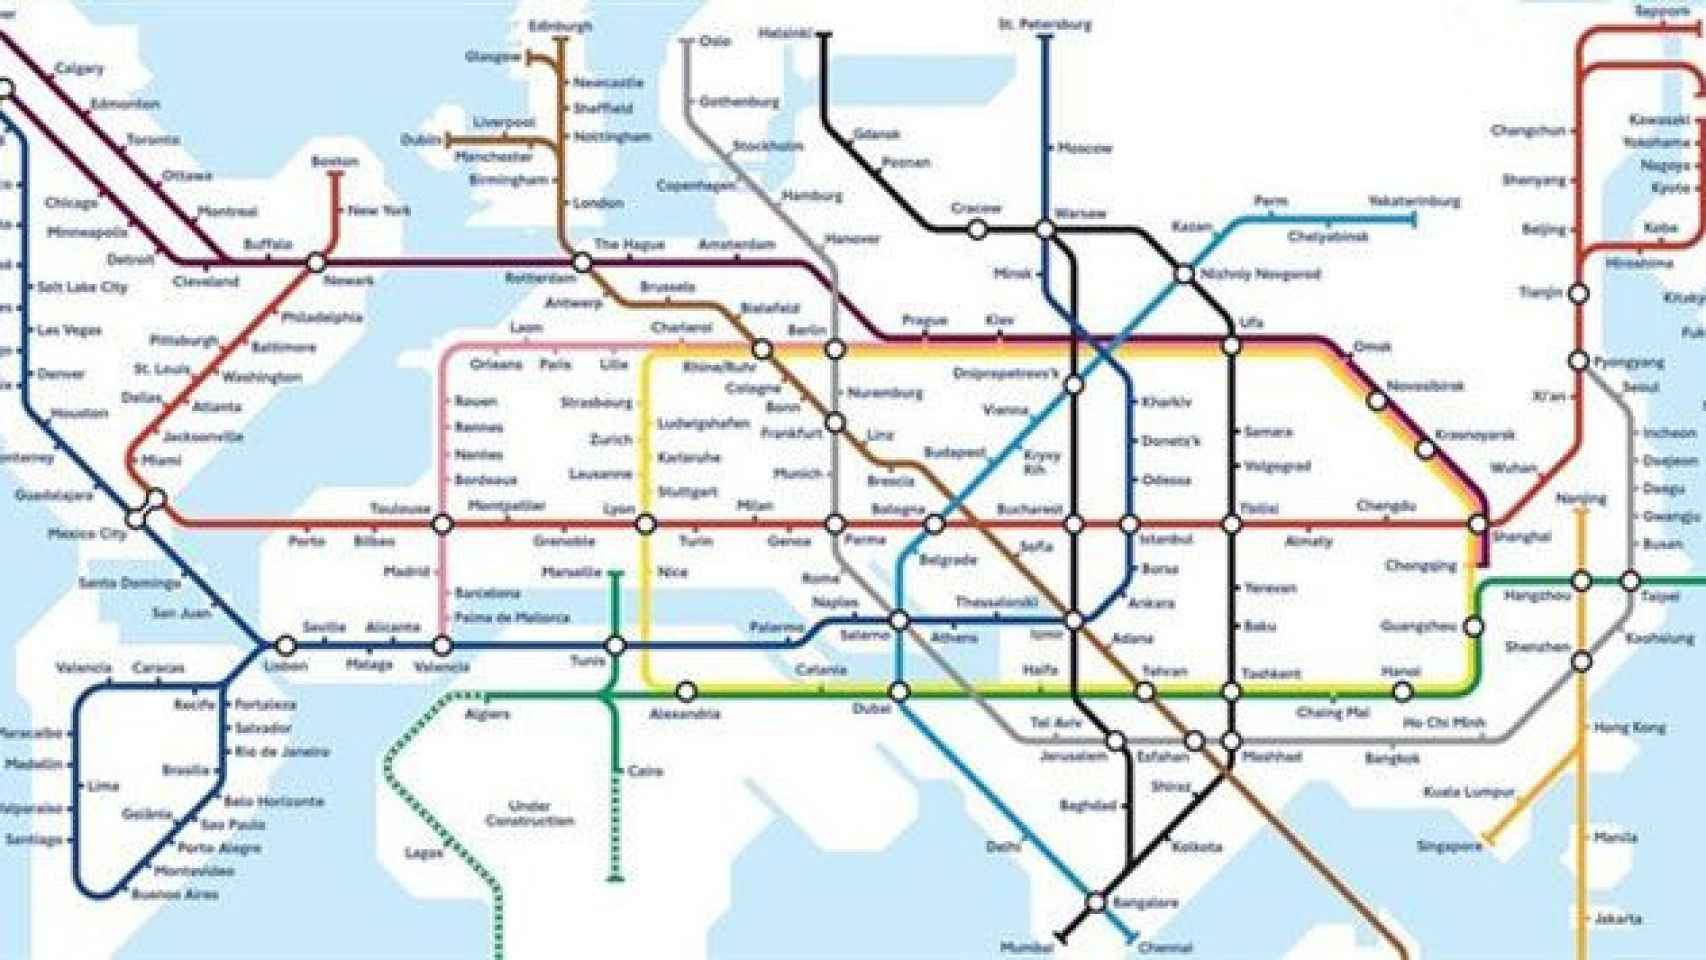 Mapa de las principales ciudades del mundo contectadas por Hyperloop